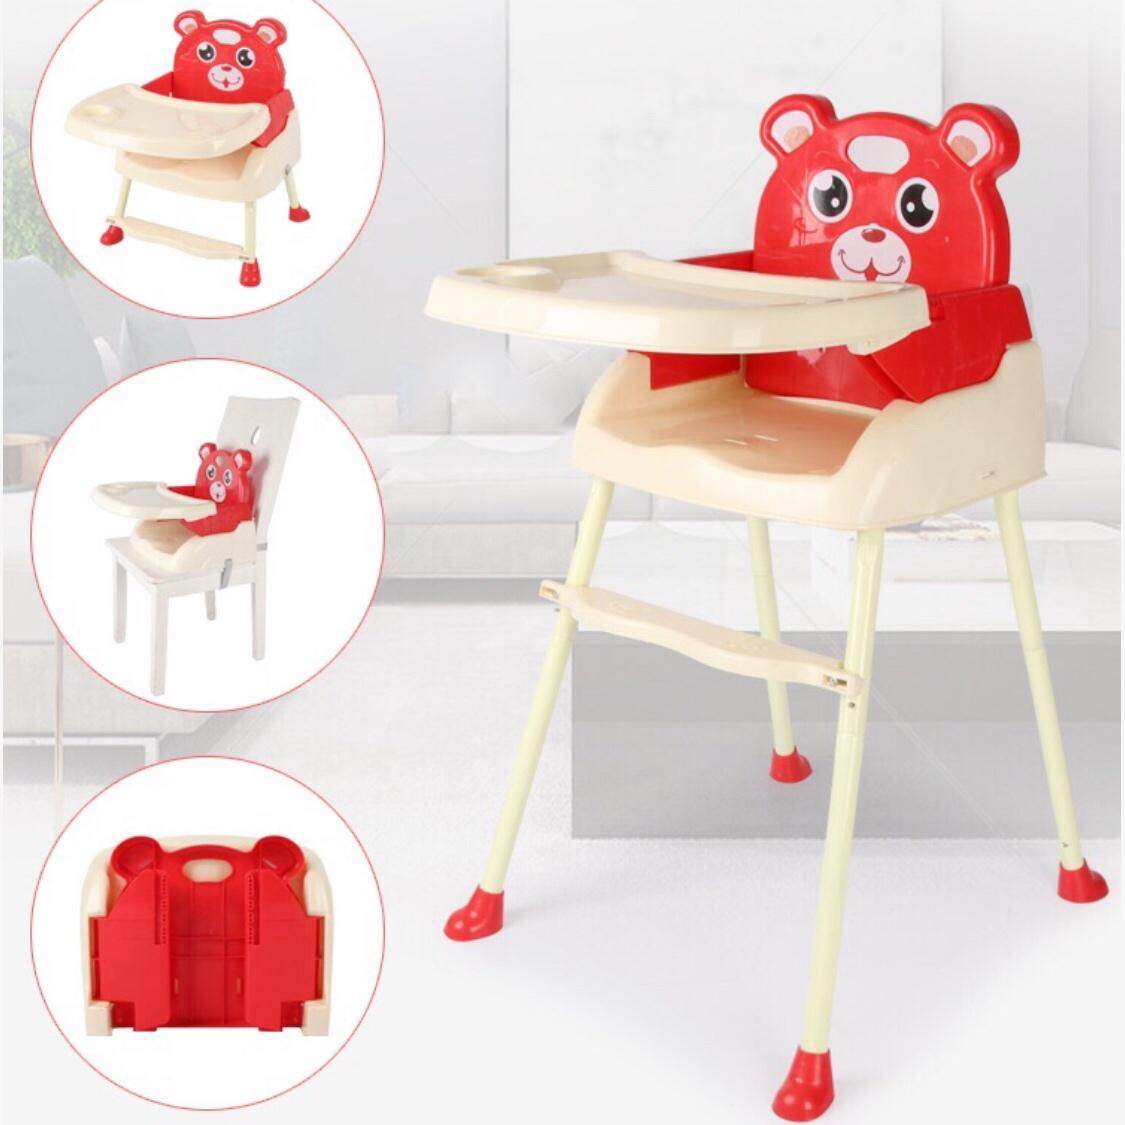 เก้าอื้กินข้าวเด็ก 4 in 1 พับได้ เก้าอื้หัดนัง ของไช้เด็ก โต็ะกินข้าวเด็ก โต็ะกินข้าวเต็กทรงสูง เก้าอี้กินข้าวเต็กทรงสูง โต๊ะเต็ก เก้าส้เตัก สีแดง Red รุนพับได้ Baby High Chair